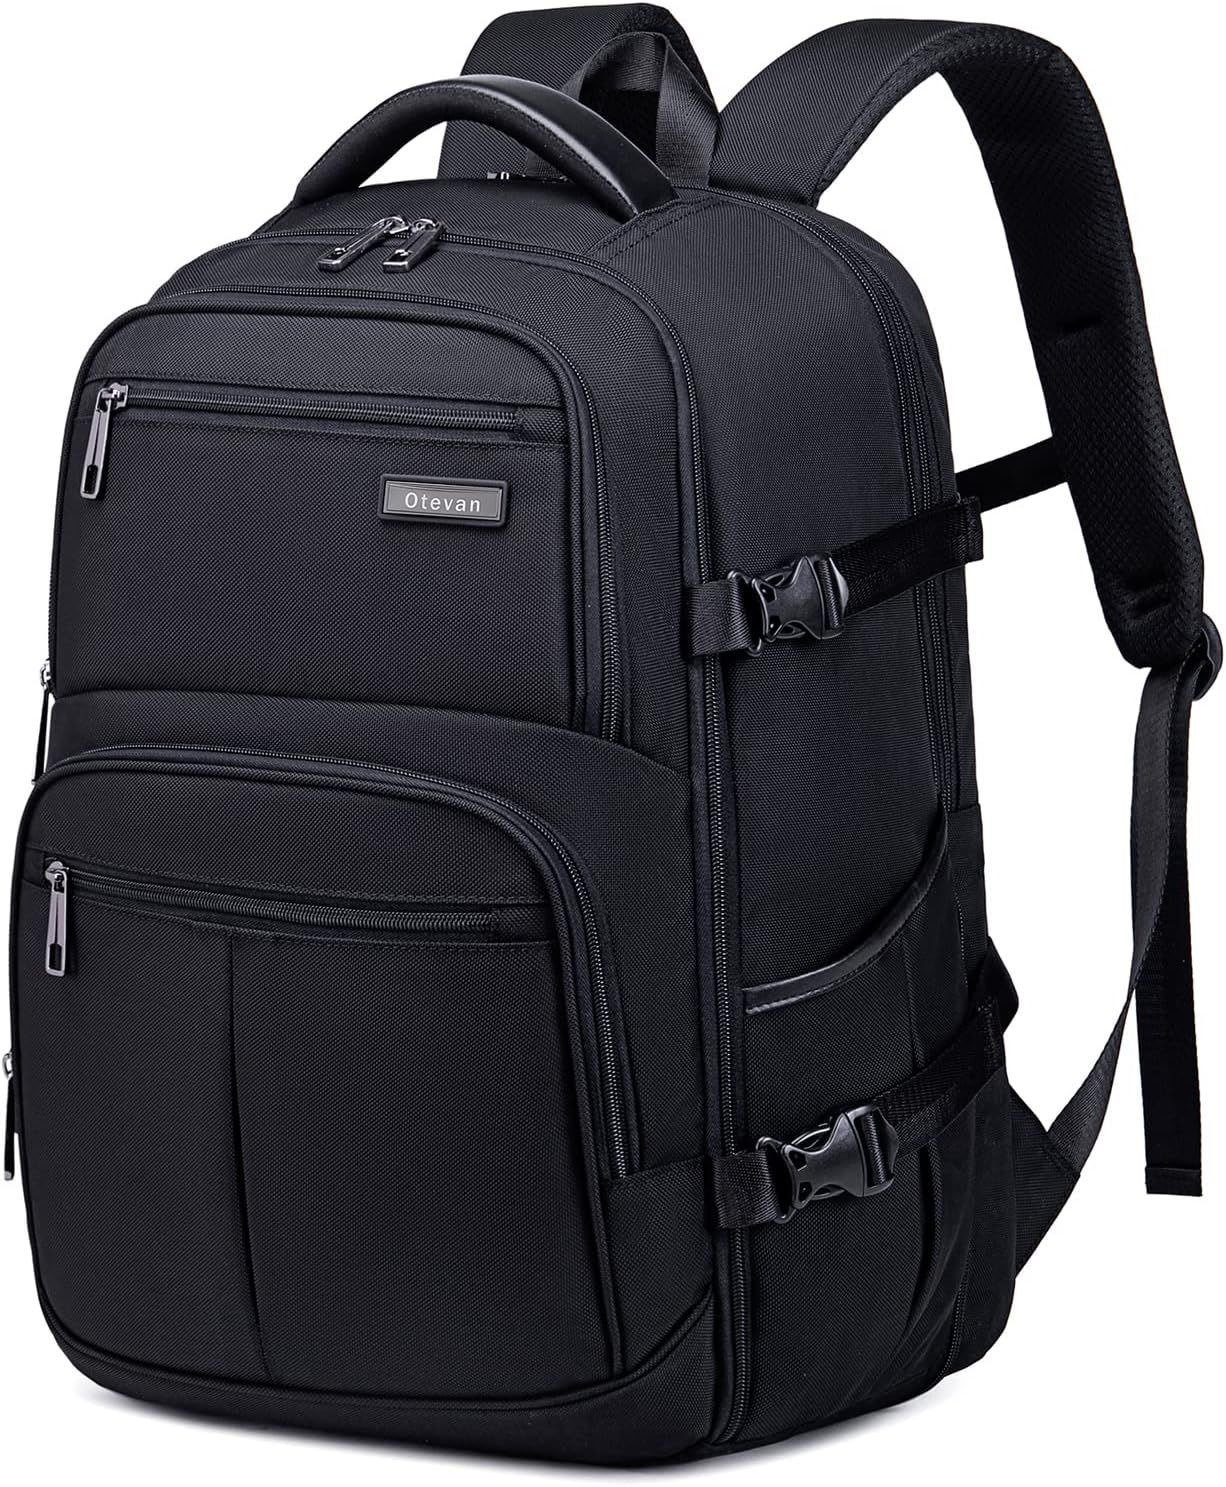 Otevan Travel Backpack for Men Women,45L Carry On Flight Black 